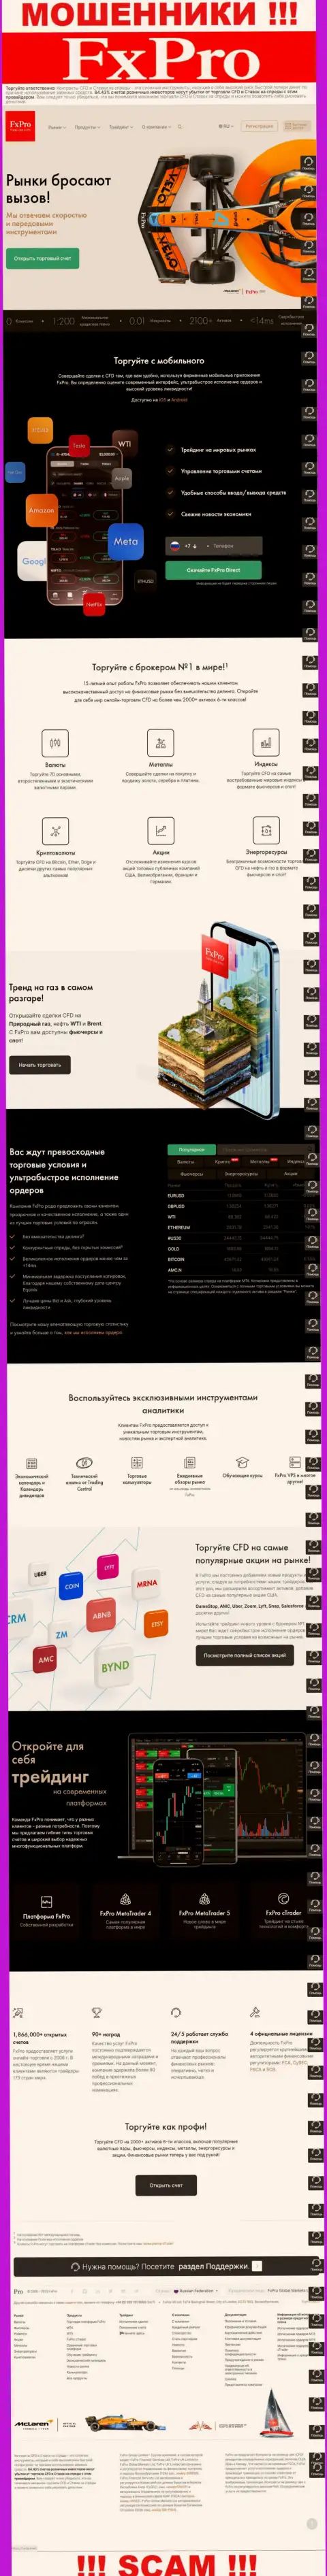 Развод для лохов - официальный web-портал мошенников ФиксПро Файненшл Сервис Лтд